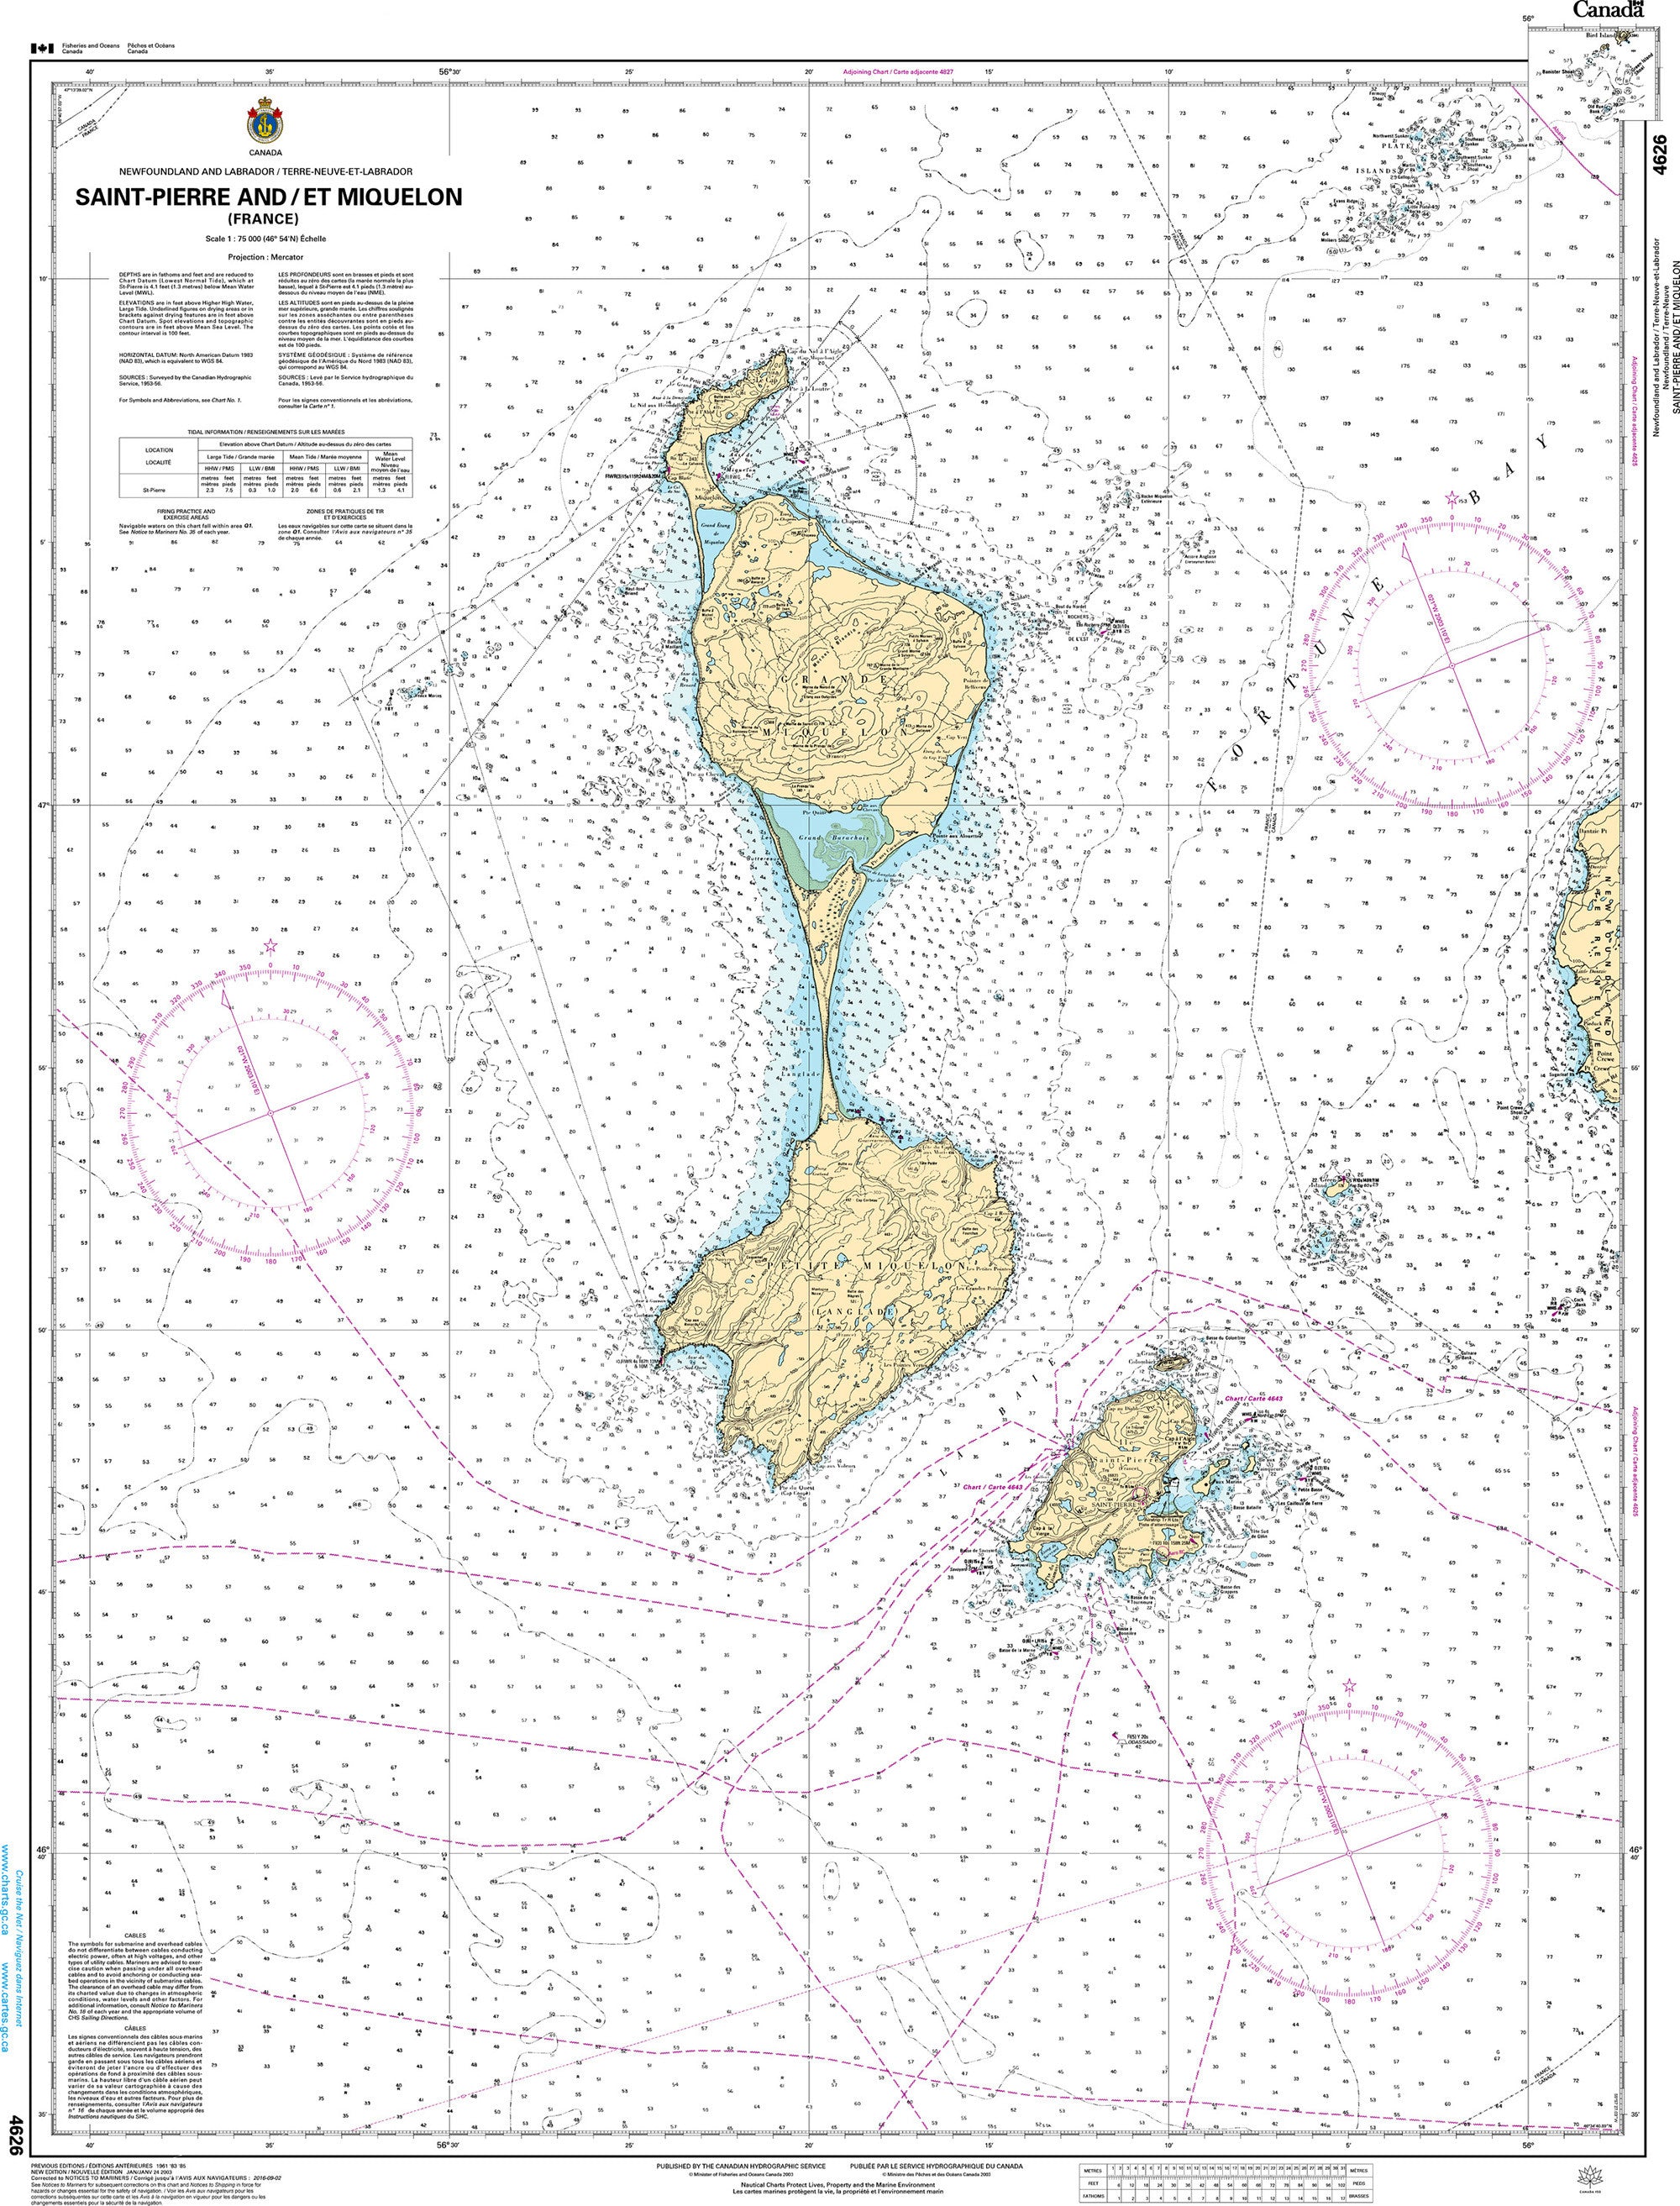 Canadian Hydrographic Service Nautical Chart CHS4626: Saint-Pierre and/et Miquelon (France)